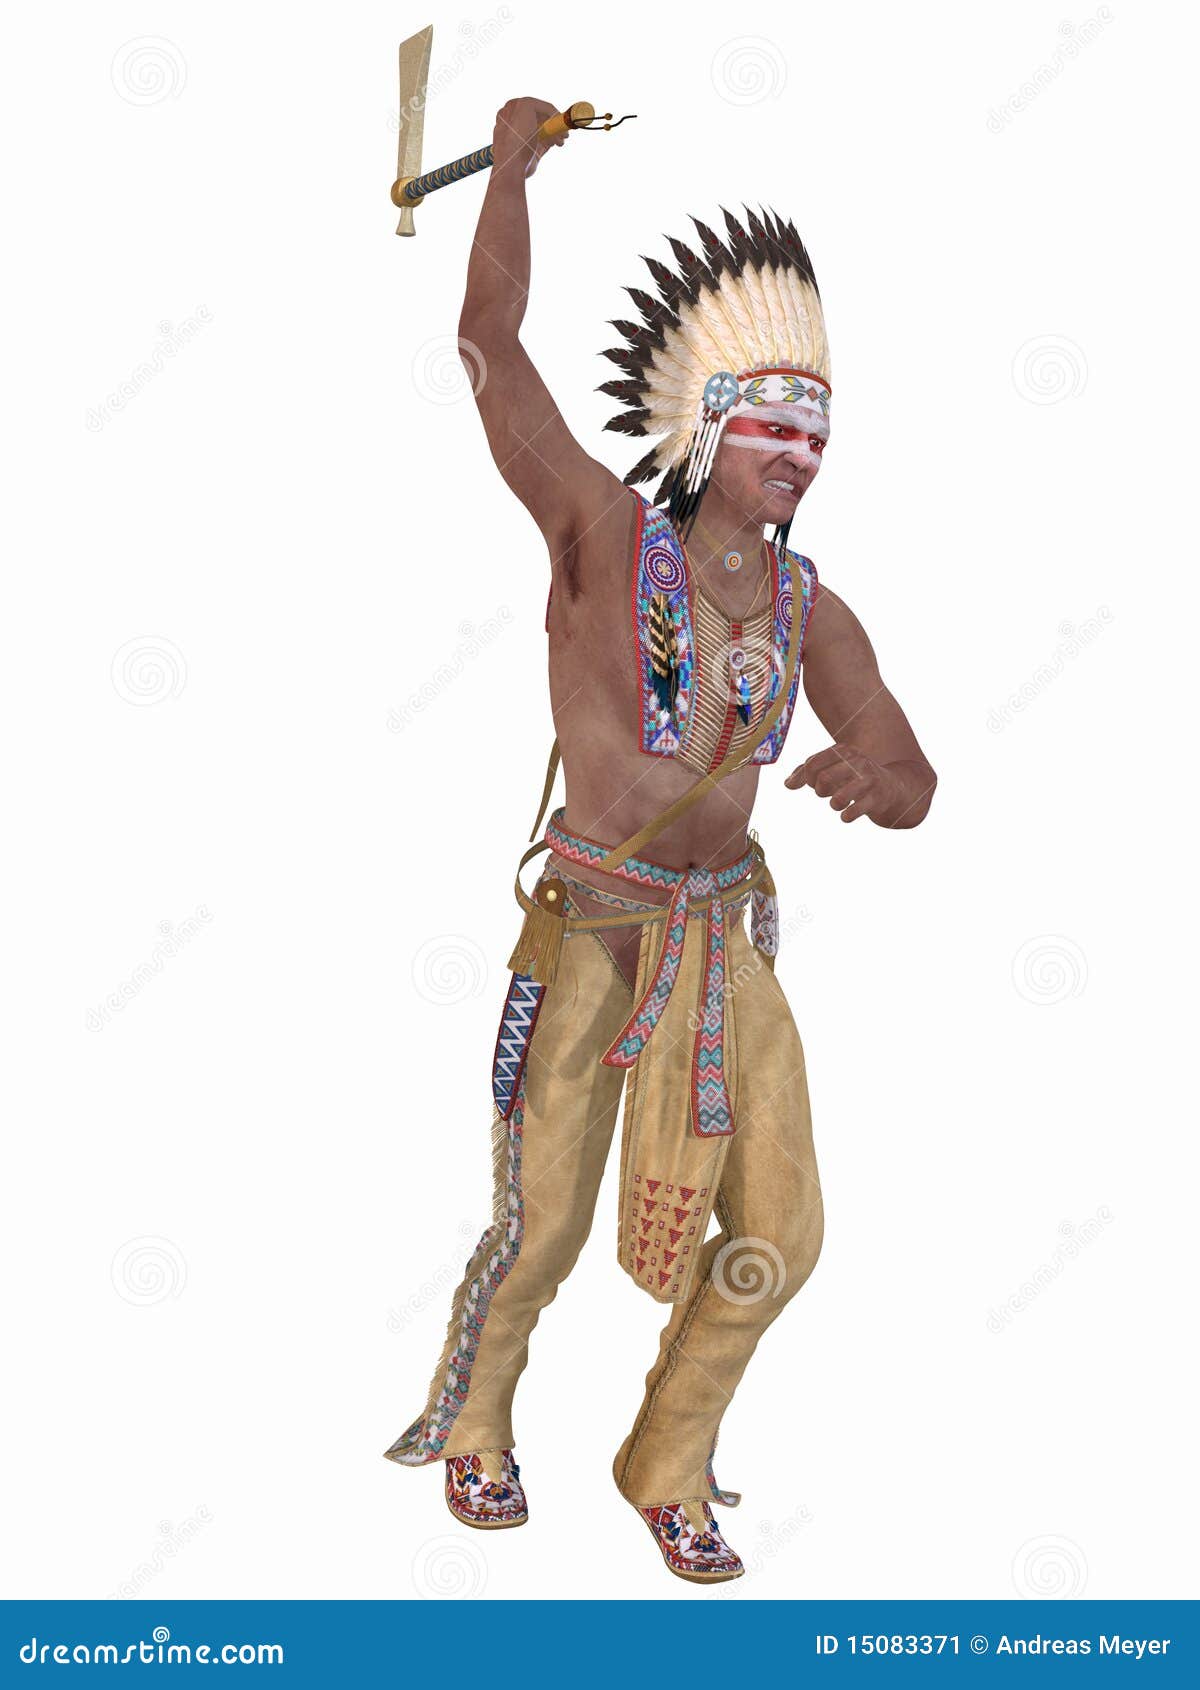 native american indian - cheyenne